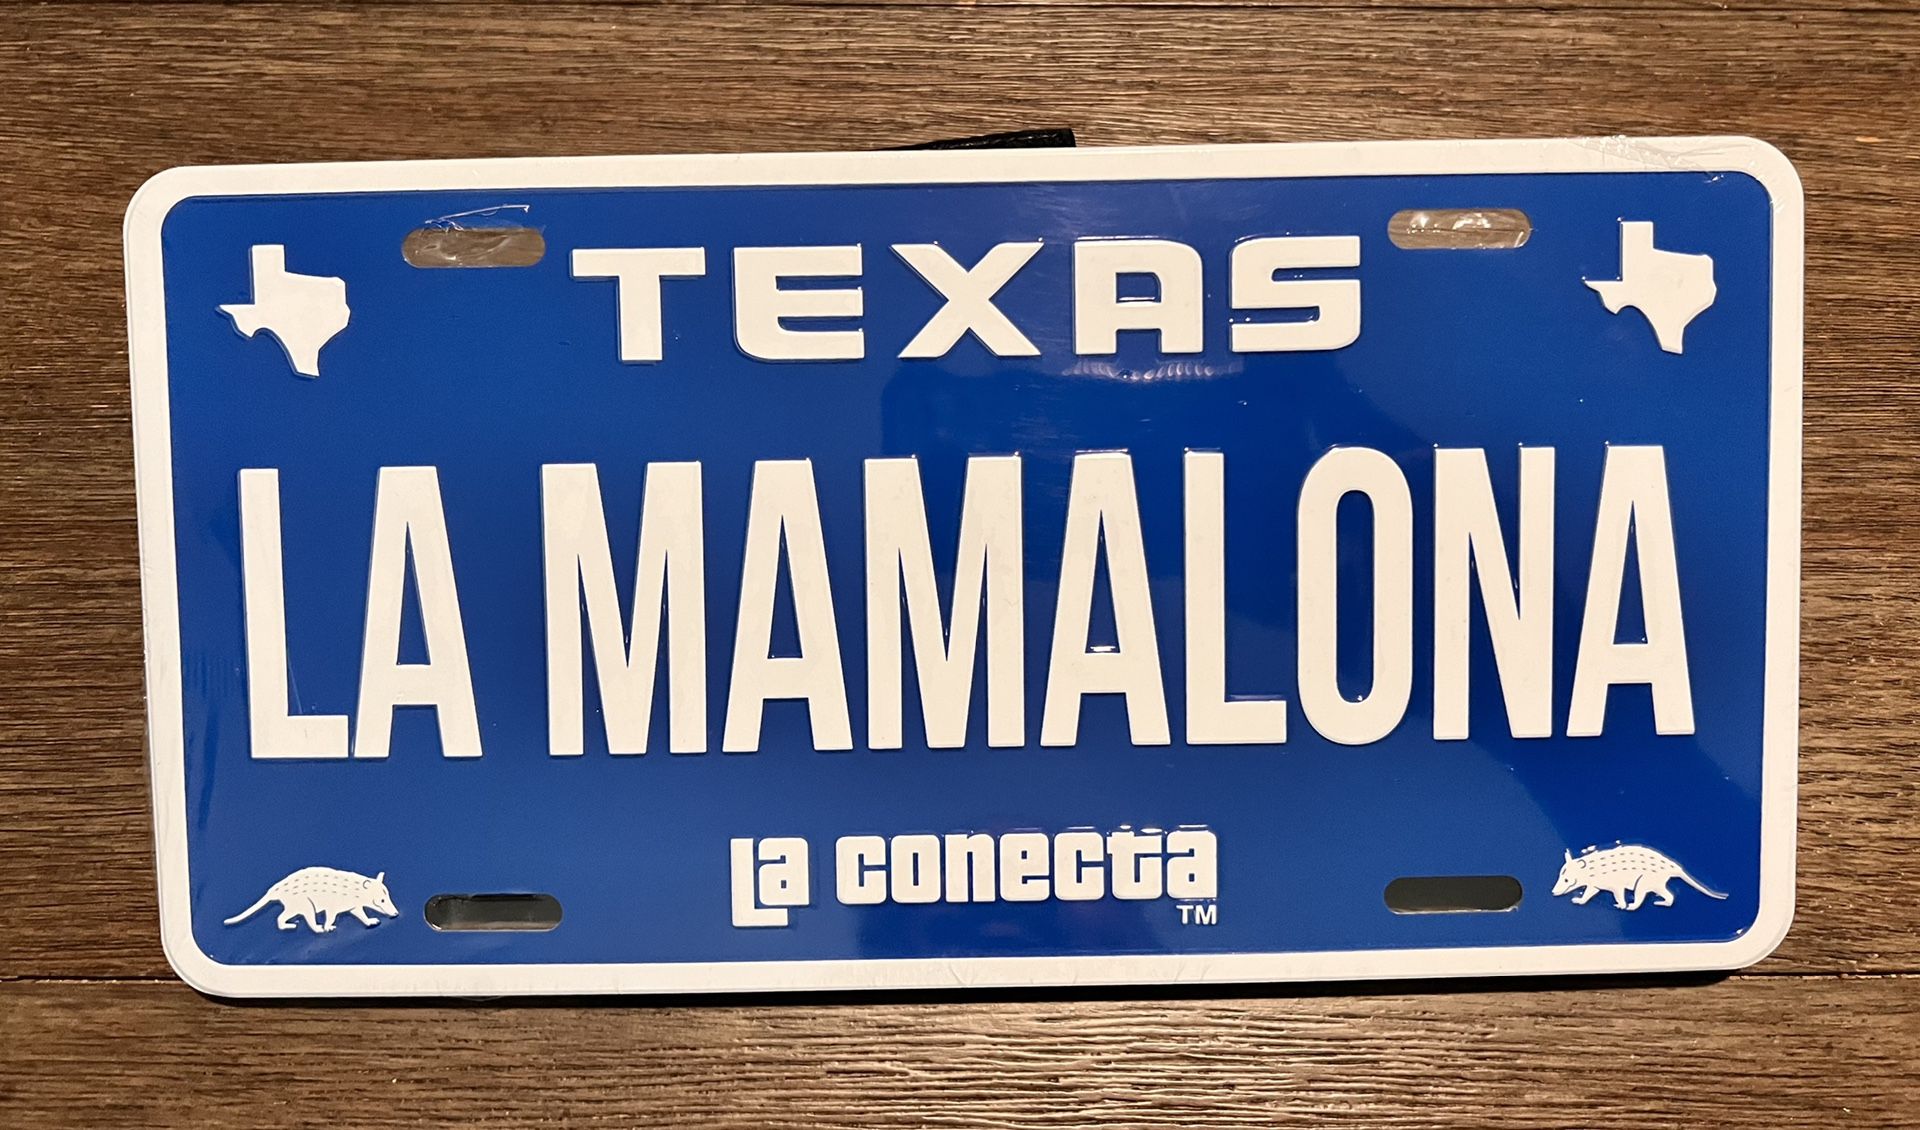 La Mamalona Texas, Car, Truck & Trailer Decor License Plate